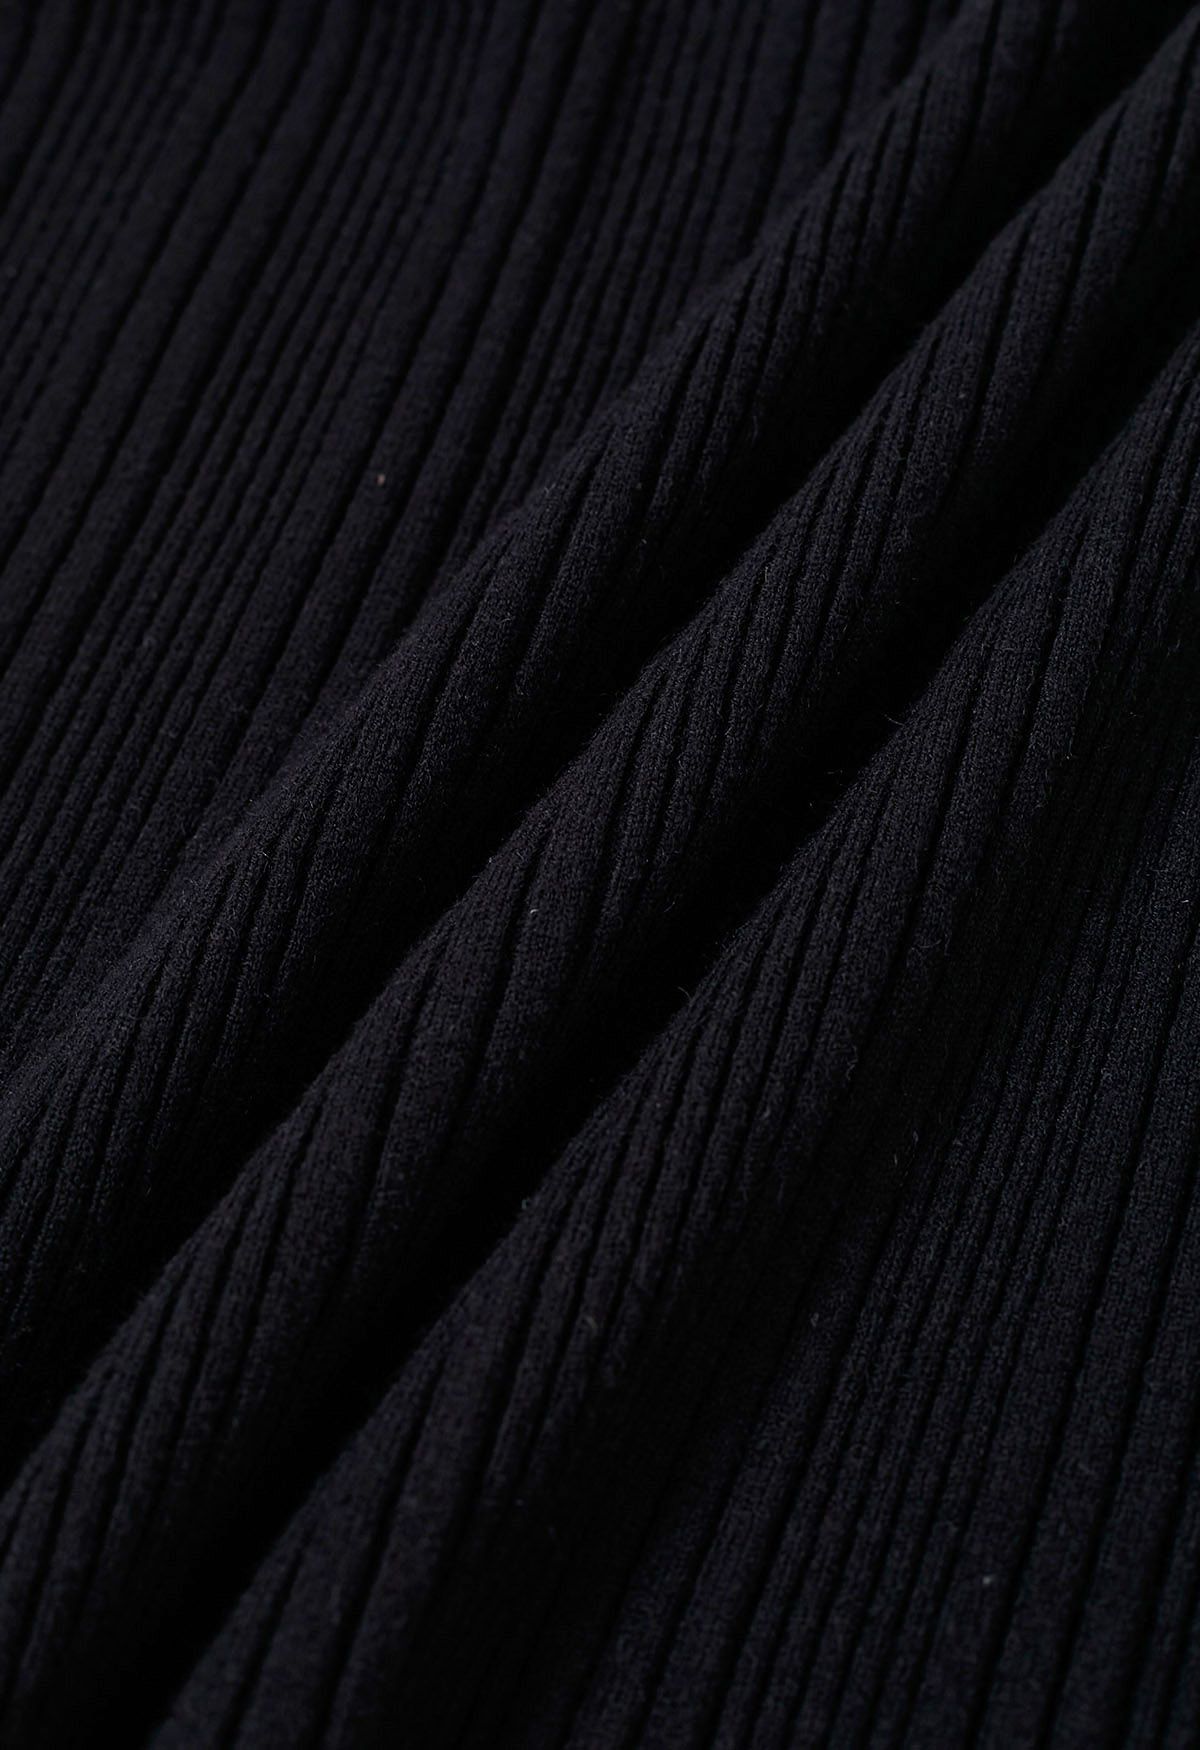 Haut en tricot côtelé à poignets évasés orné de perles en noir